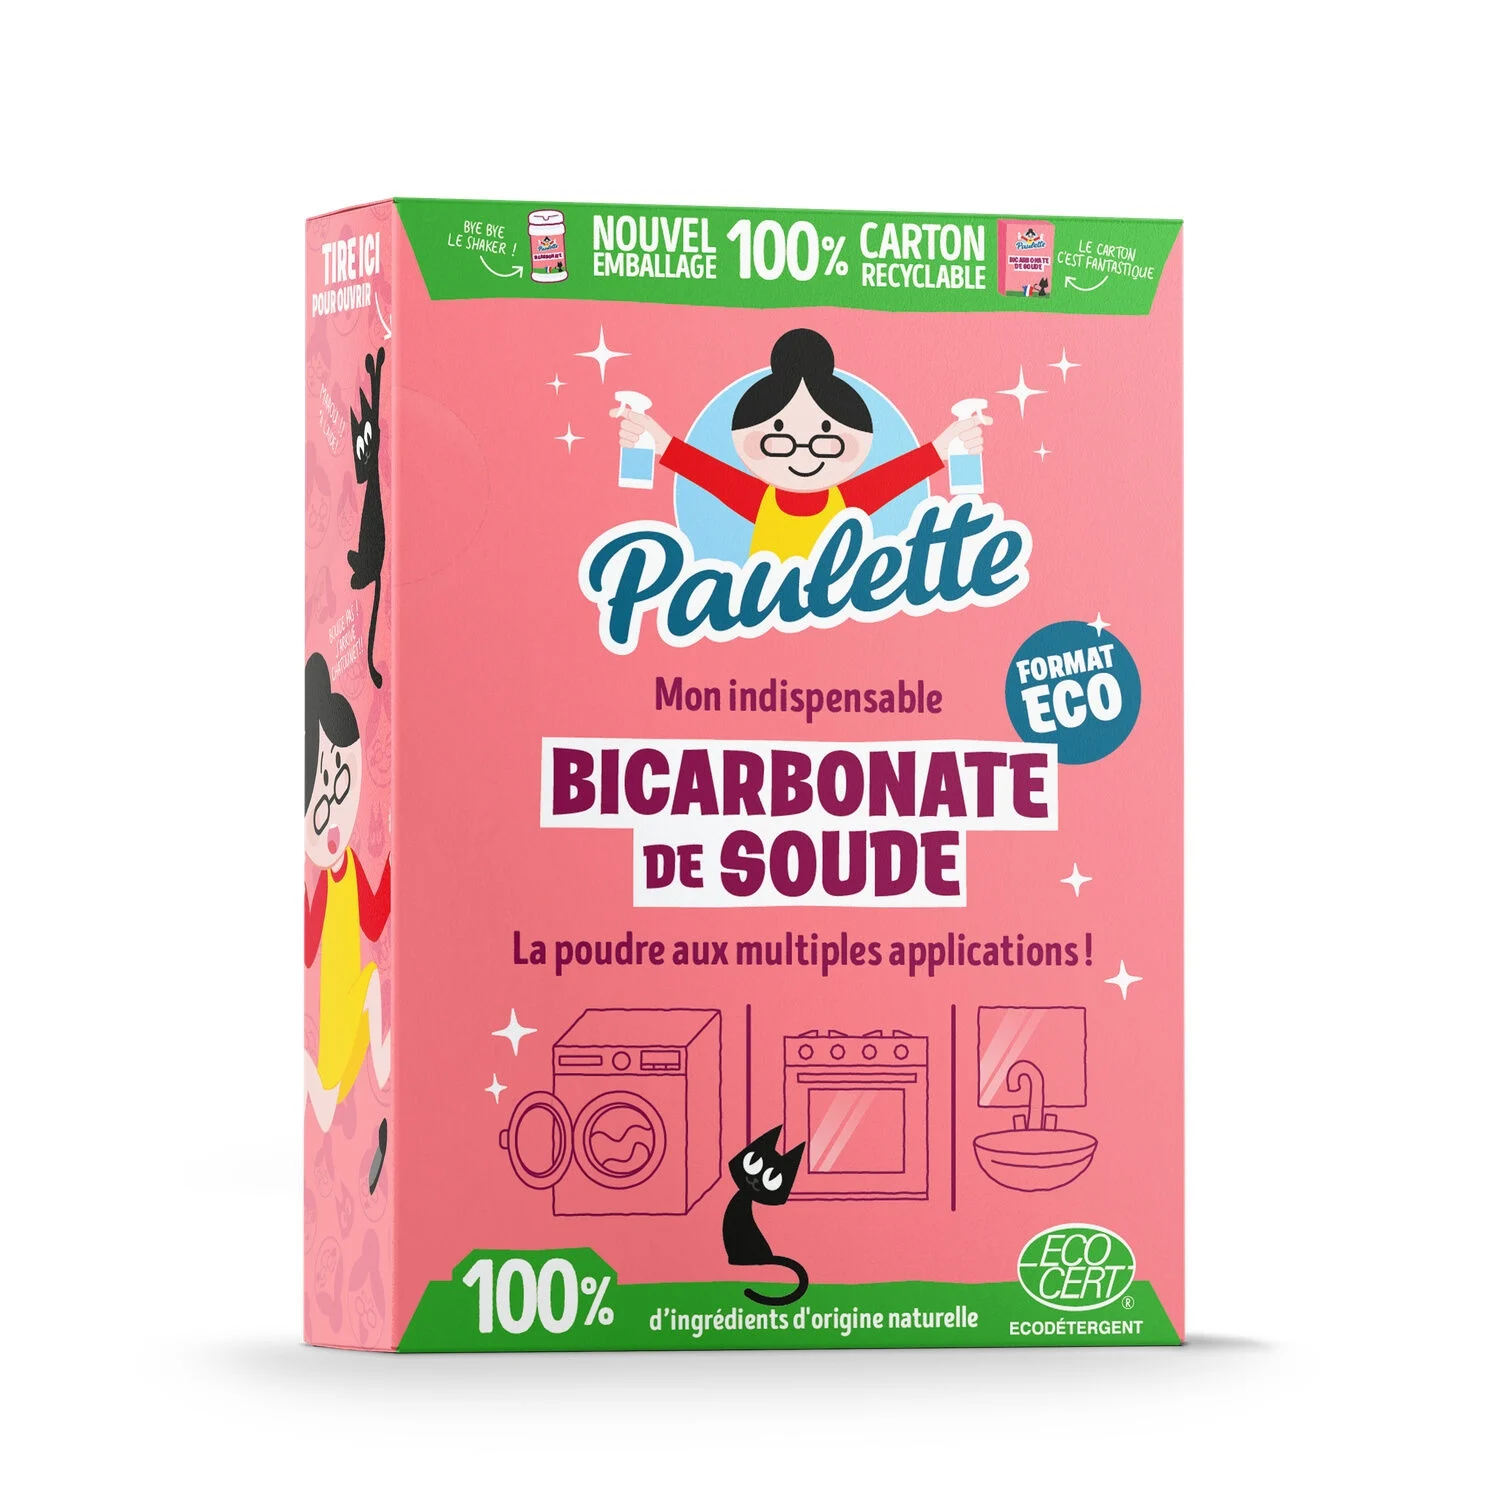 1kg Bicarbonate De Soude Eco - Paulette